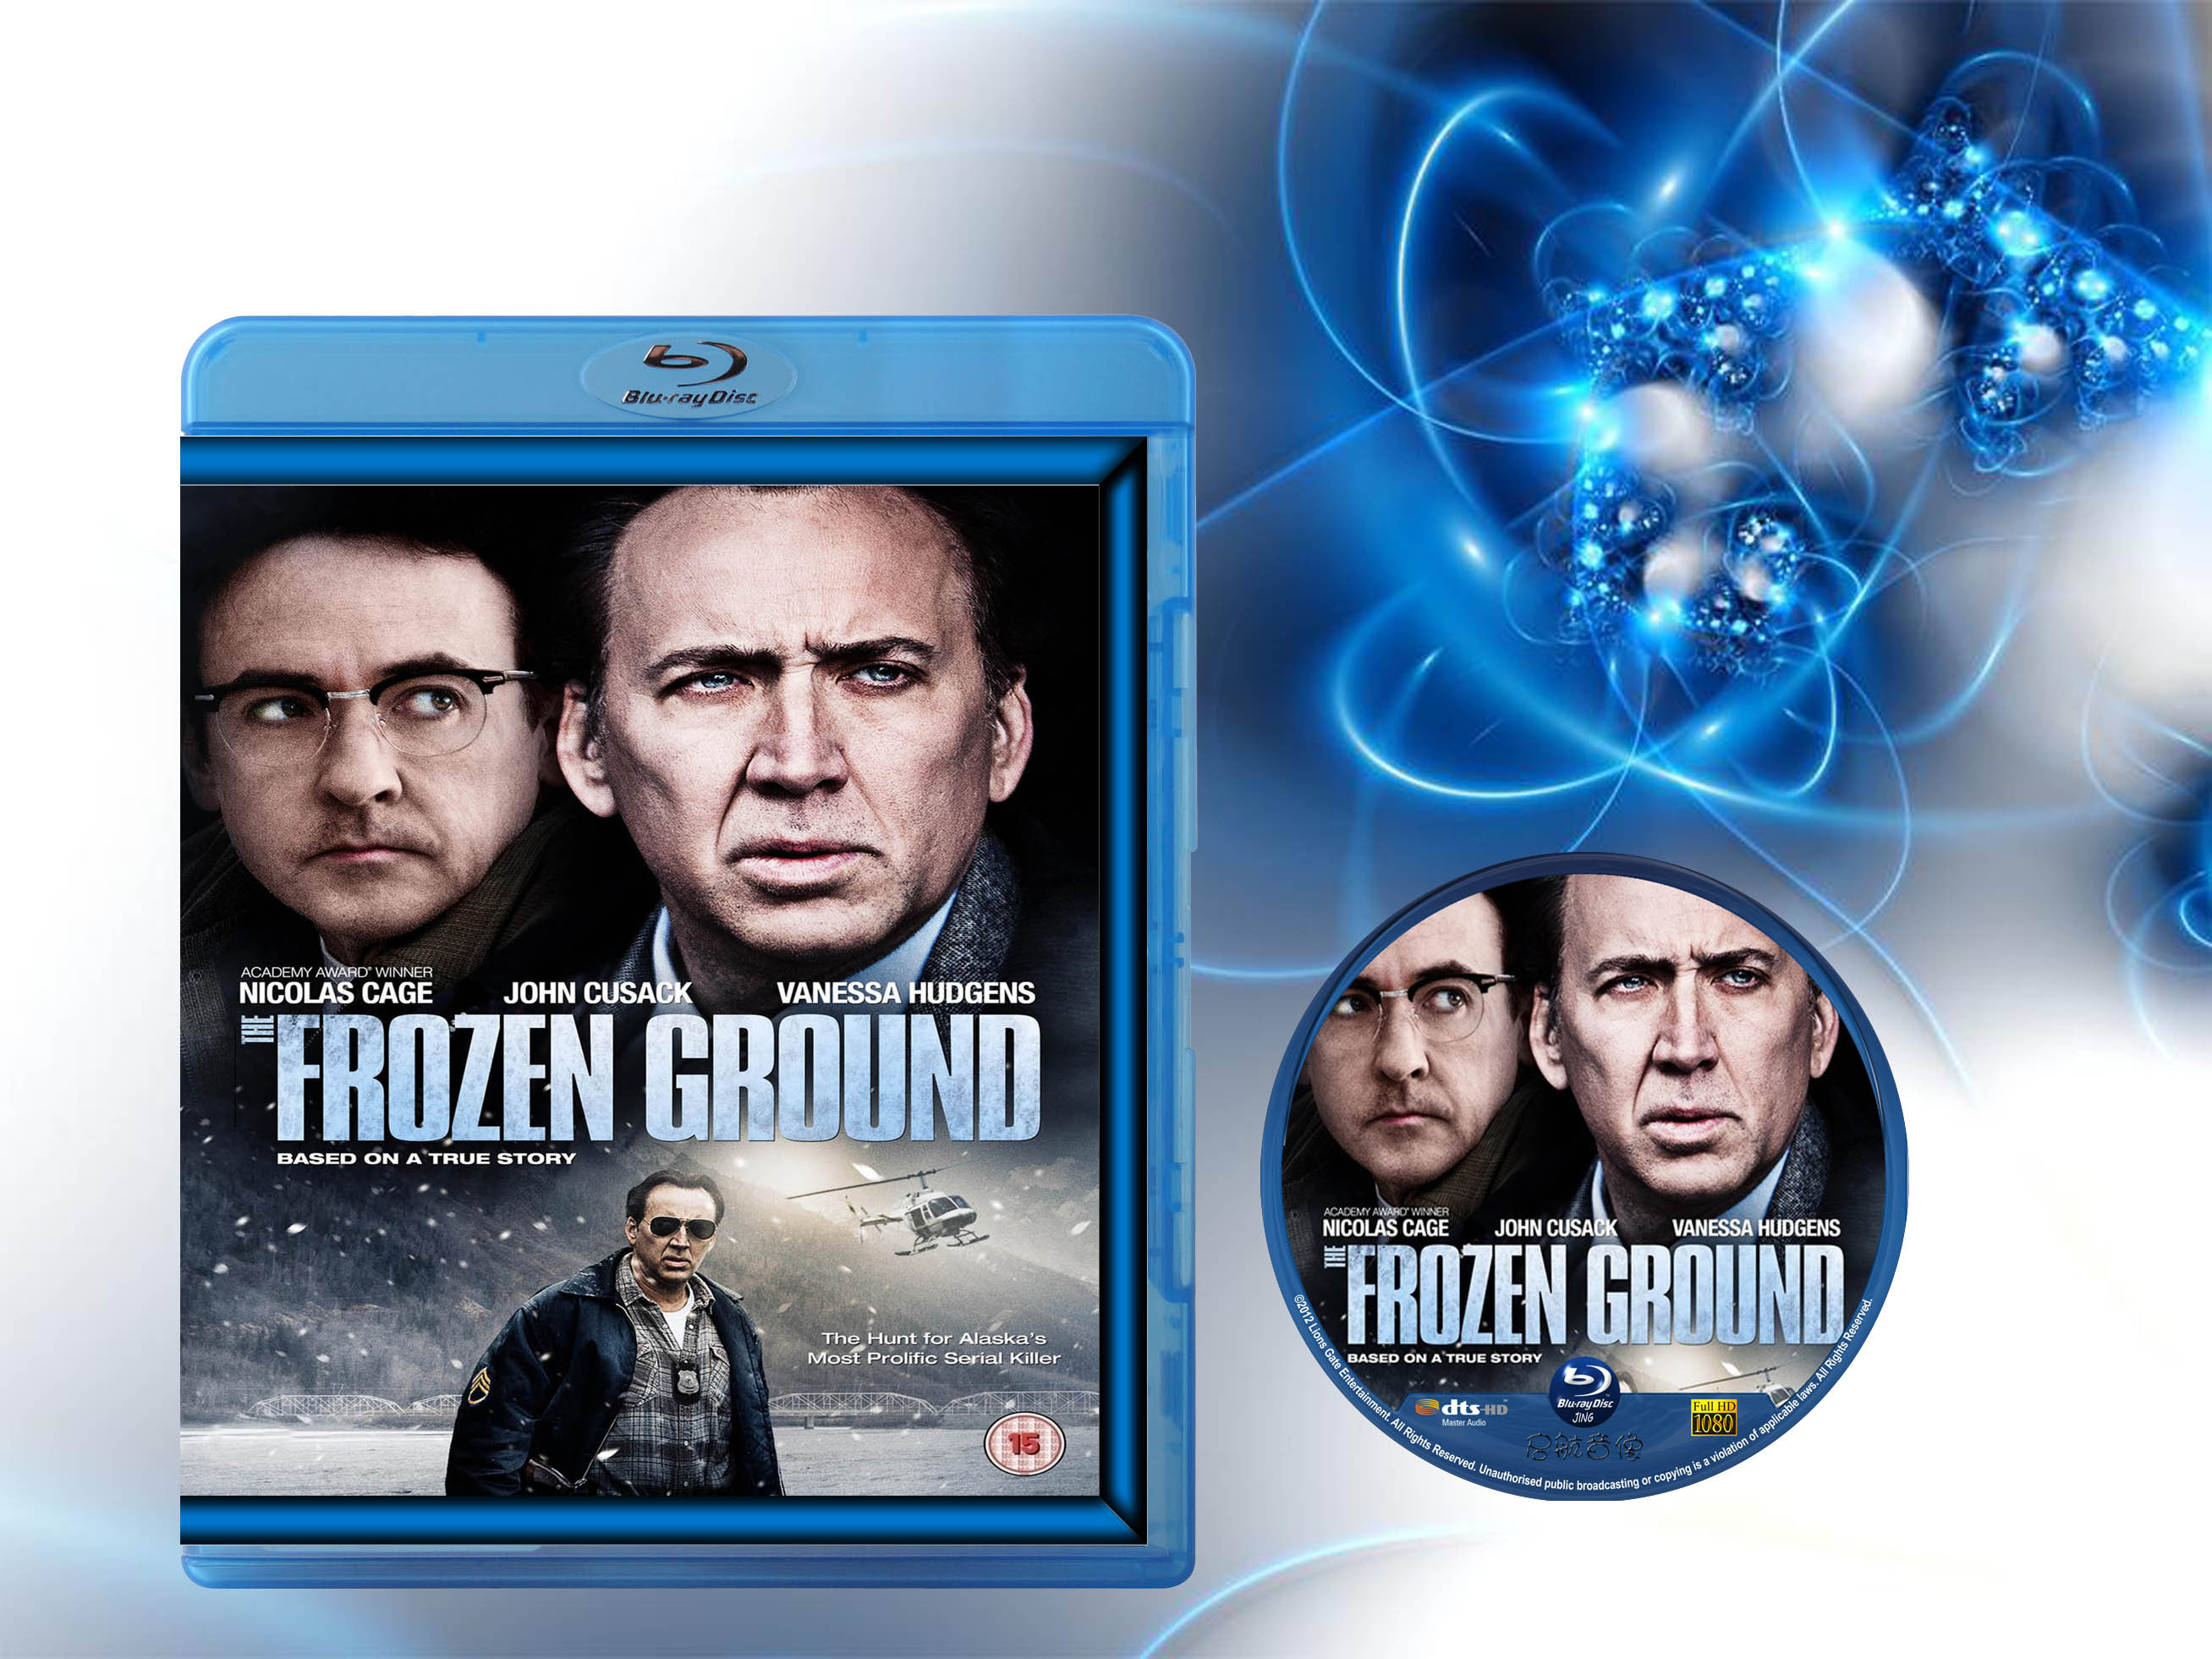  冻结之地/惊天冻地 The Frozen Ground (2013) 46-035 